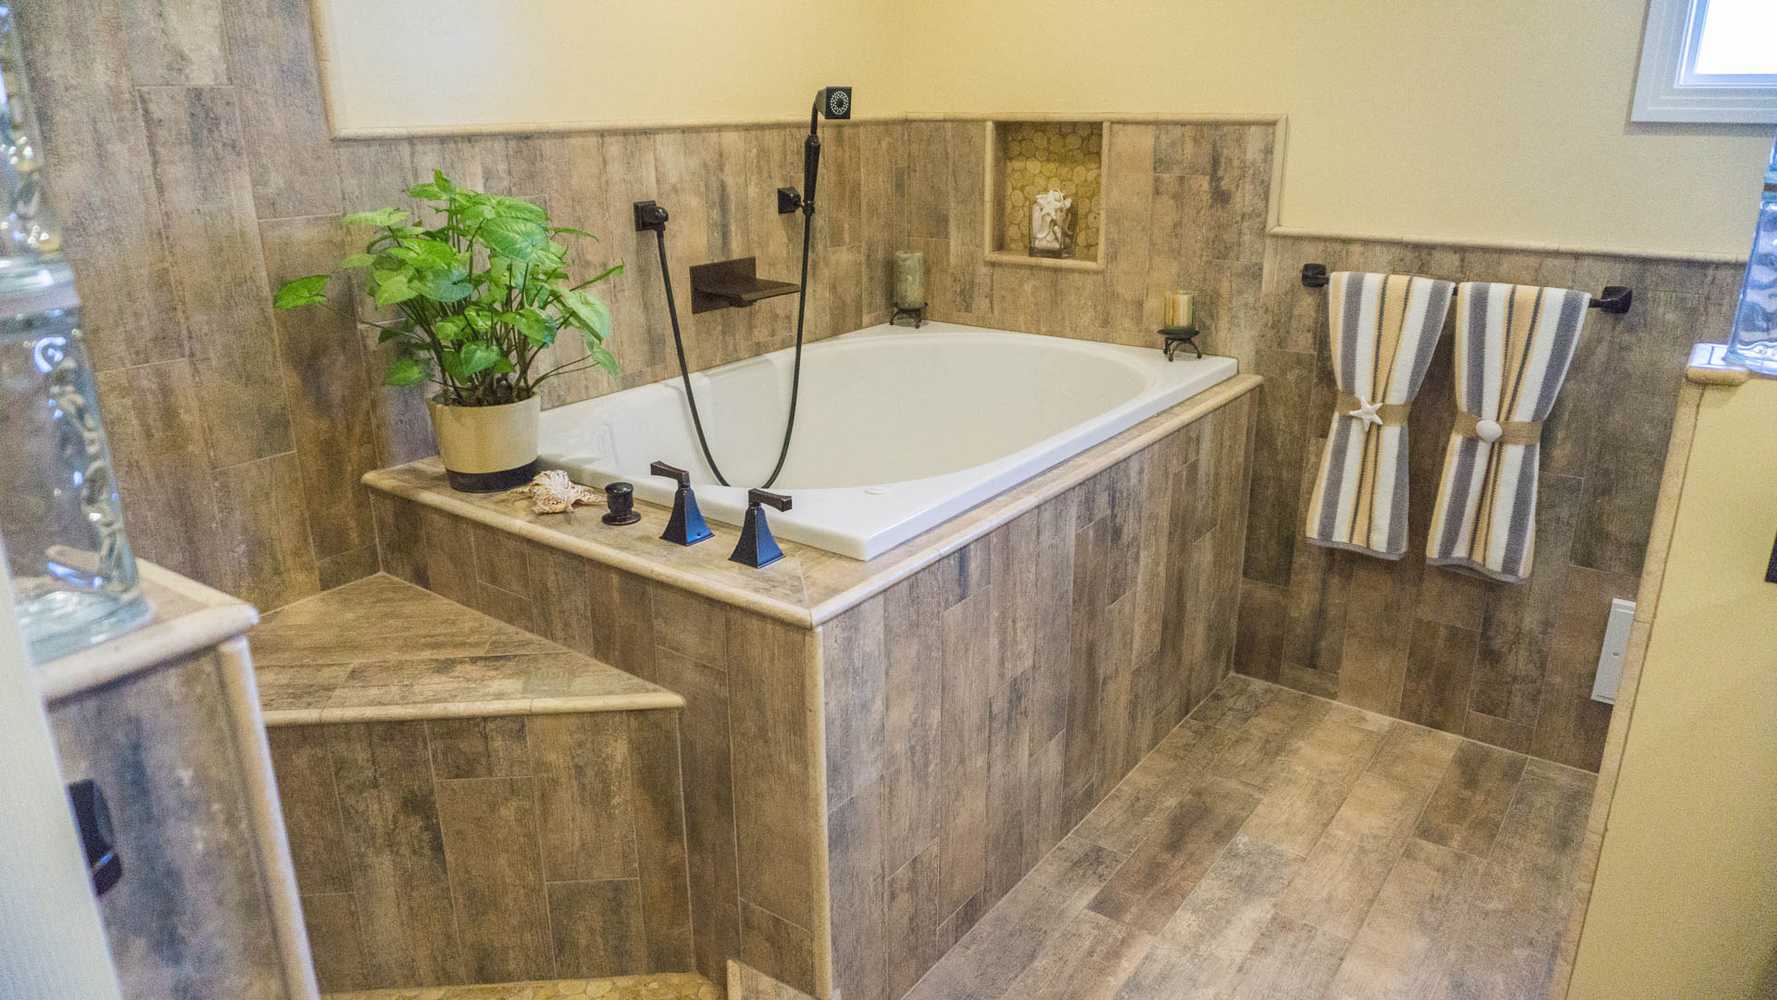 2014: Earthy Wood & Glass Master Bath